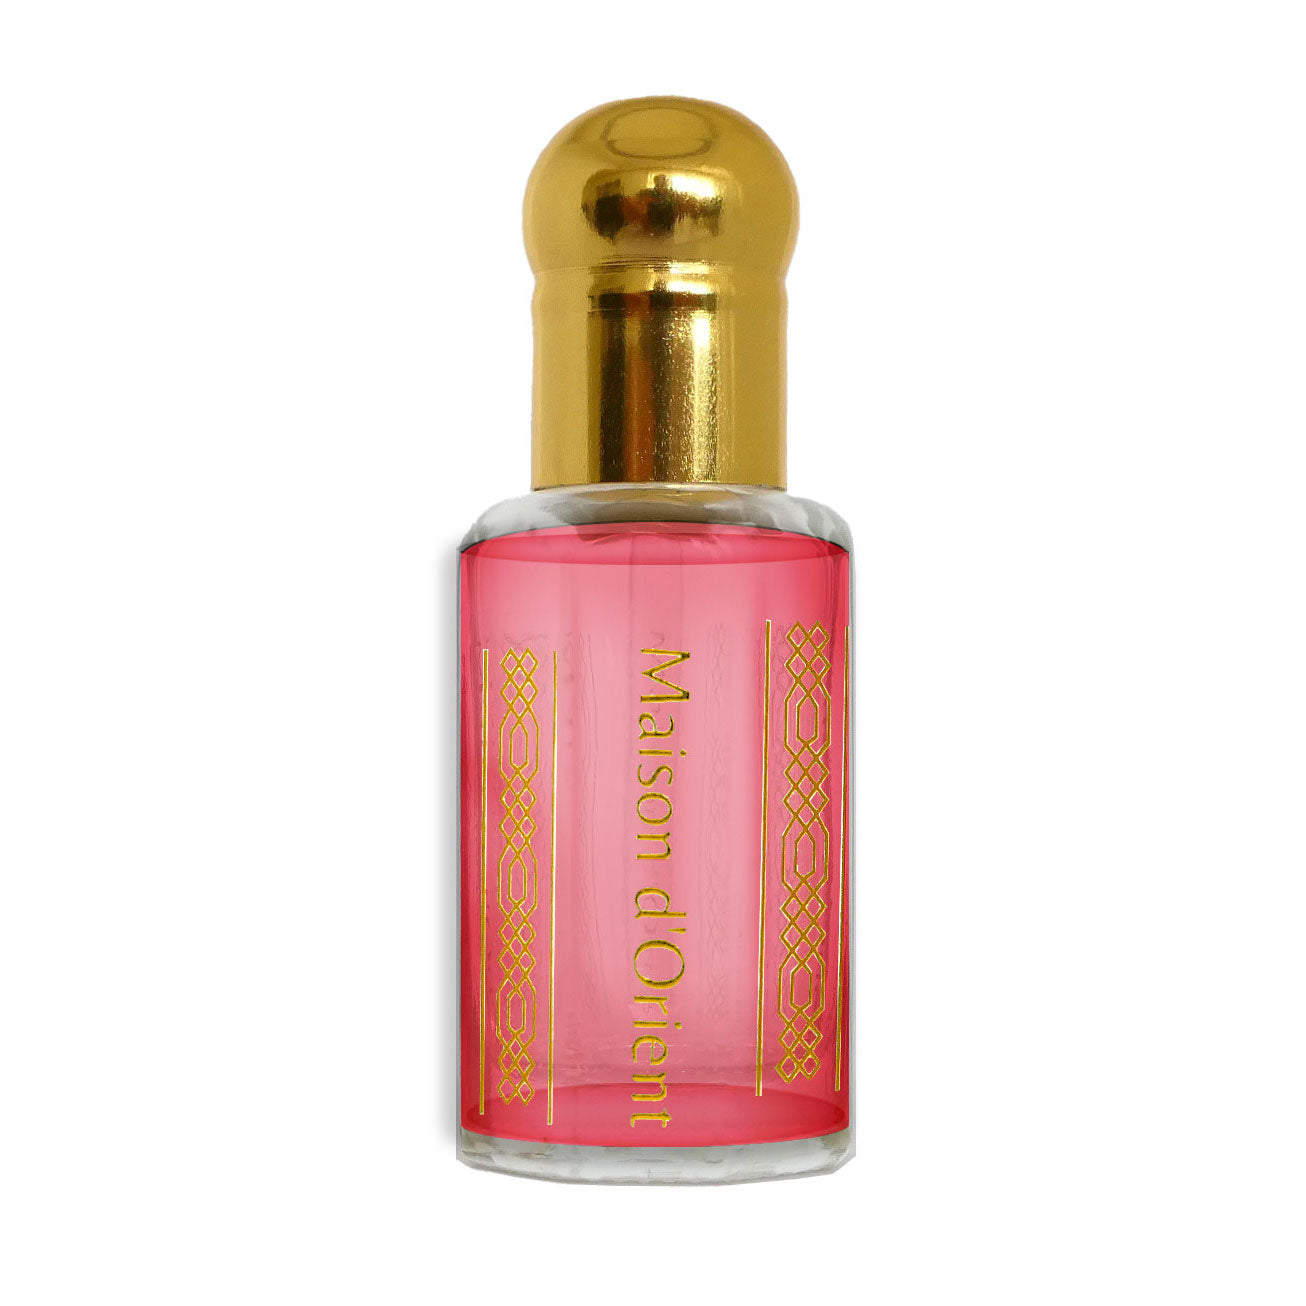 ORANGE BLOSSOM PERFUME Perfume Oil Roll On/ or Perfume 